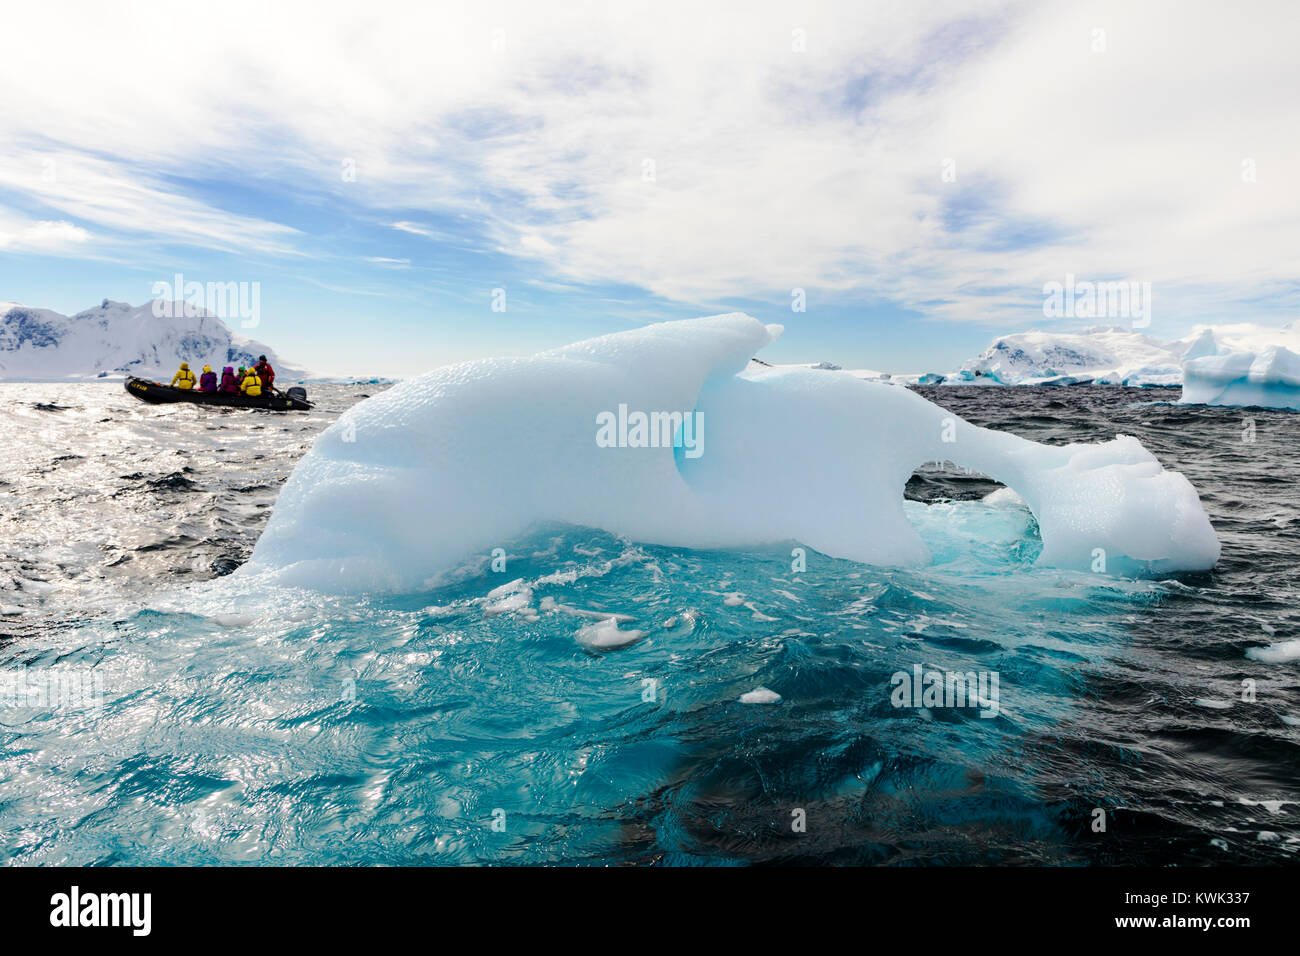 Les grands bateaux Zodiac gonflable alpinisme navette skieurs à l'Antarctique de l'aventurier de l'océan des navires à passagers Banque D'Images